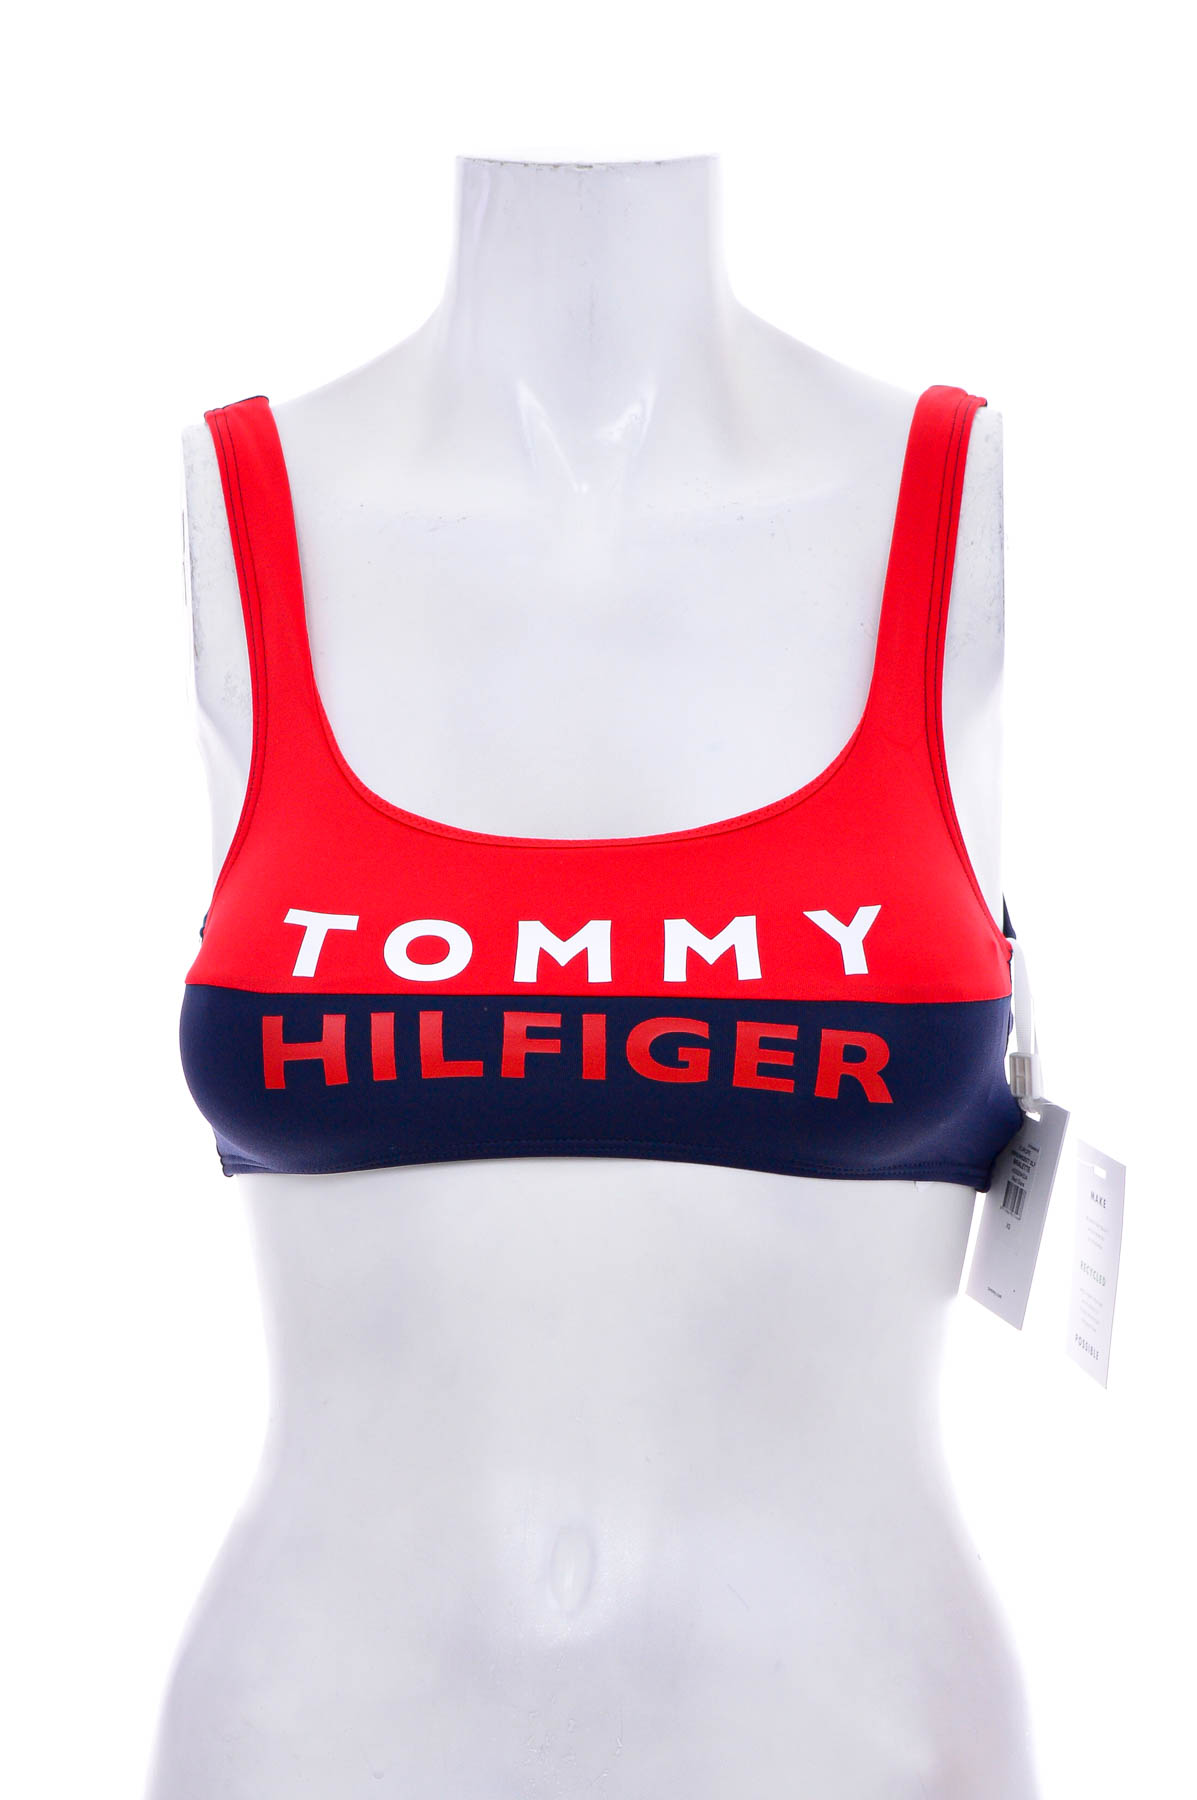 Women's swimsuit bikini top - TOMMY HILFIGER - 0